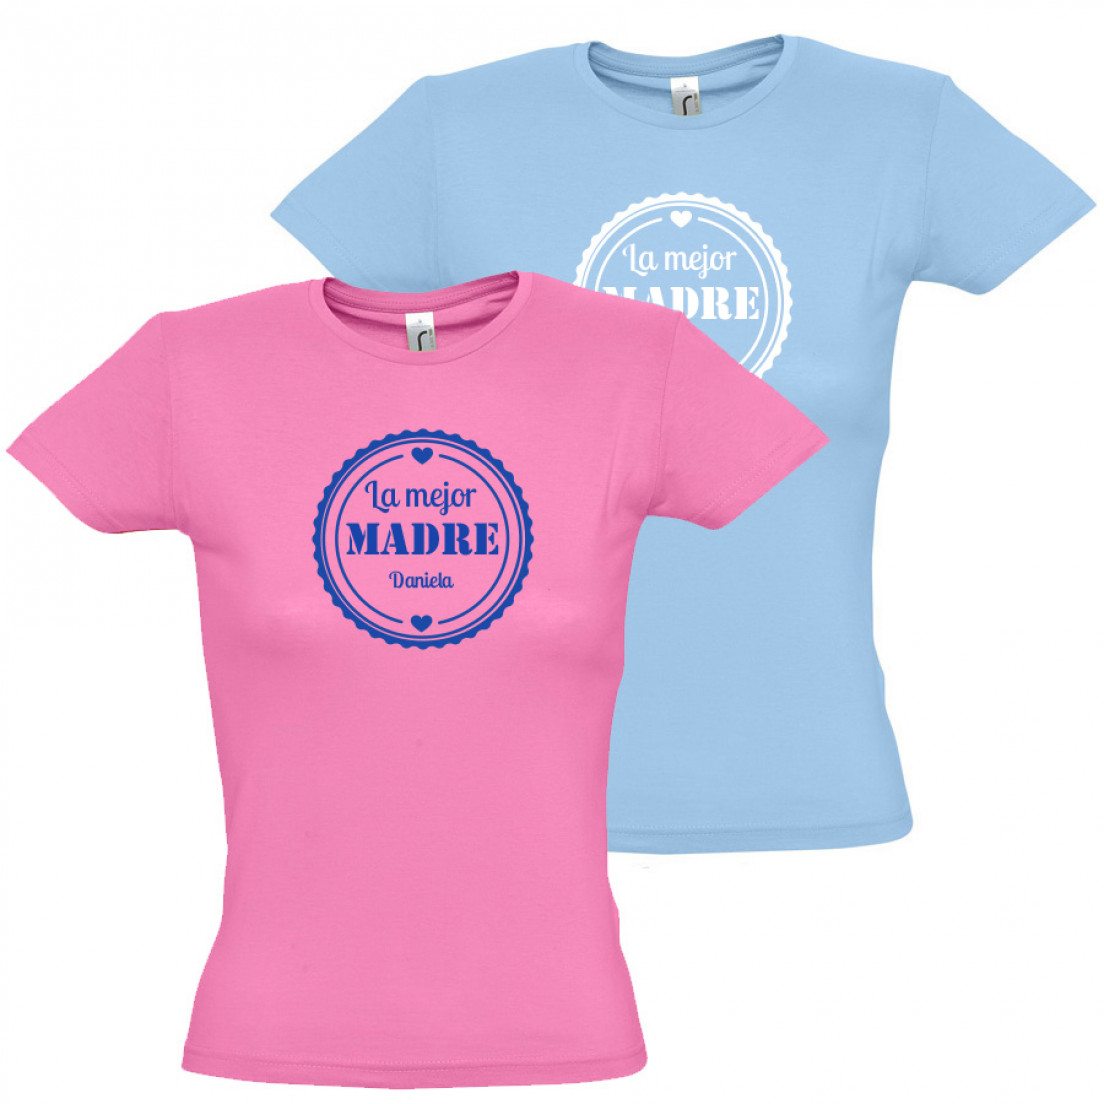 Camiseta para mujer personalizable “Mejor mamá”